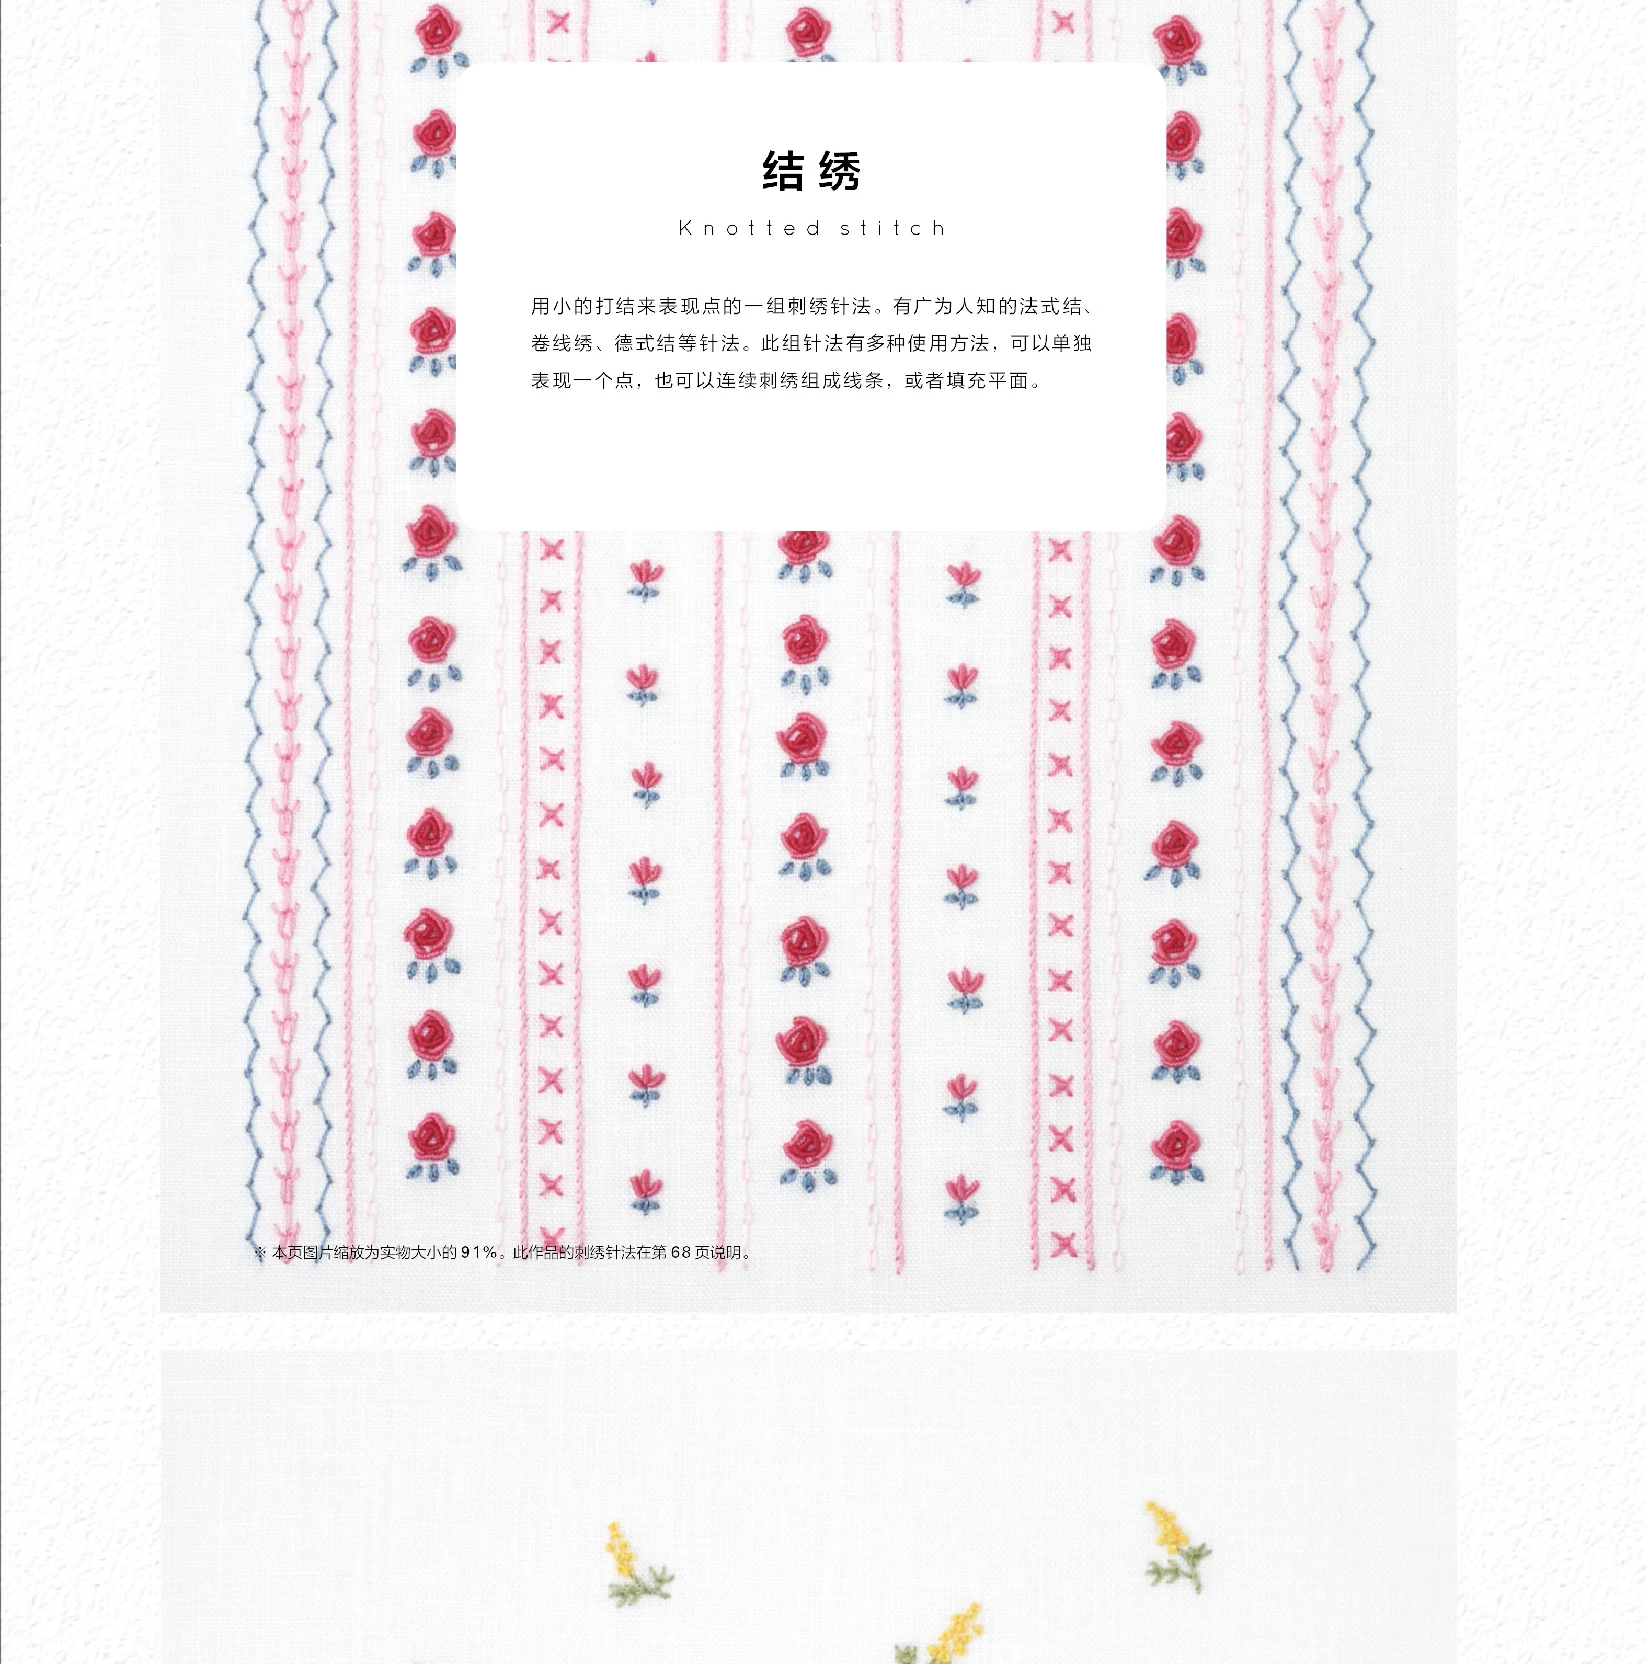 Японская вышивка Emumi Ono вышивка рукоделие Atlas книга-вышивка вводное обучение DIFUYA